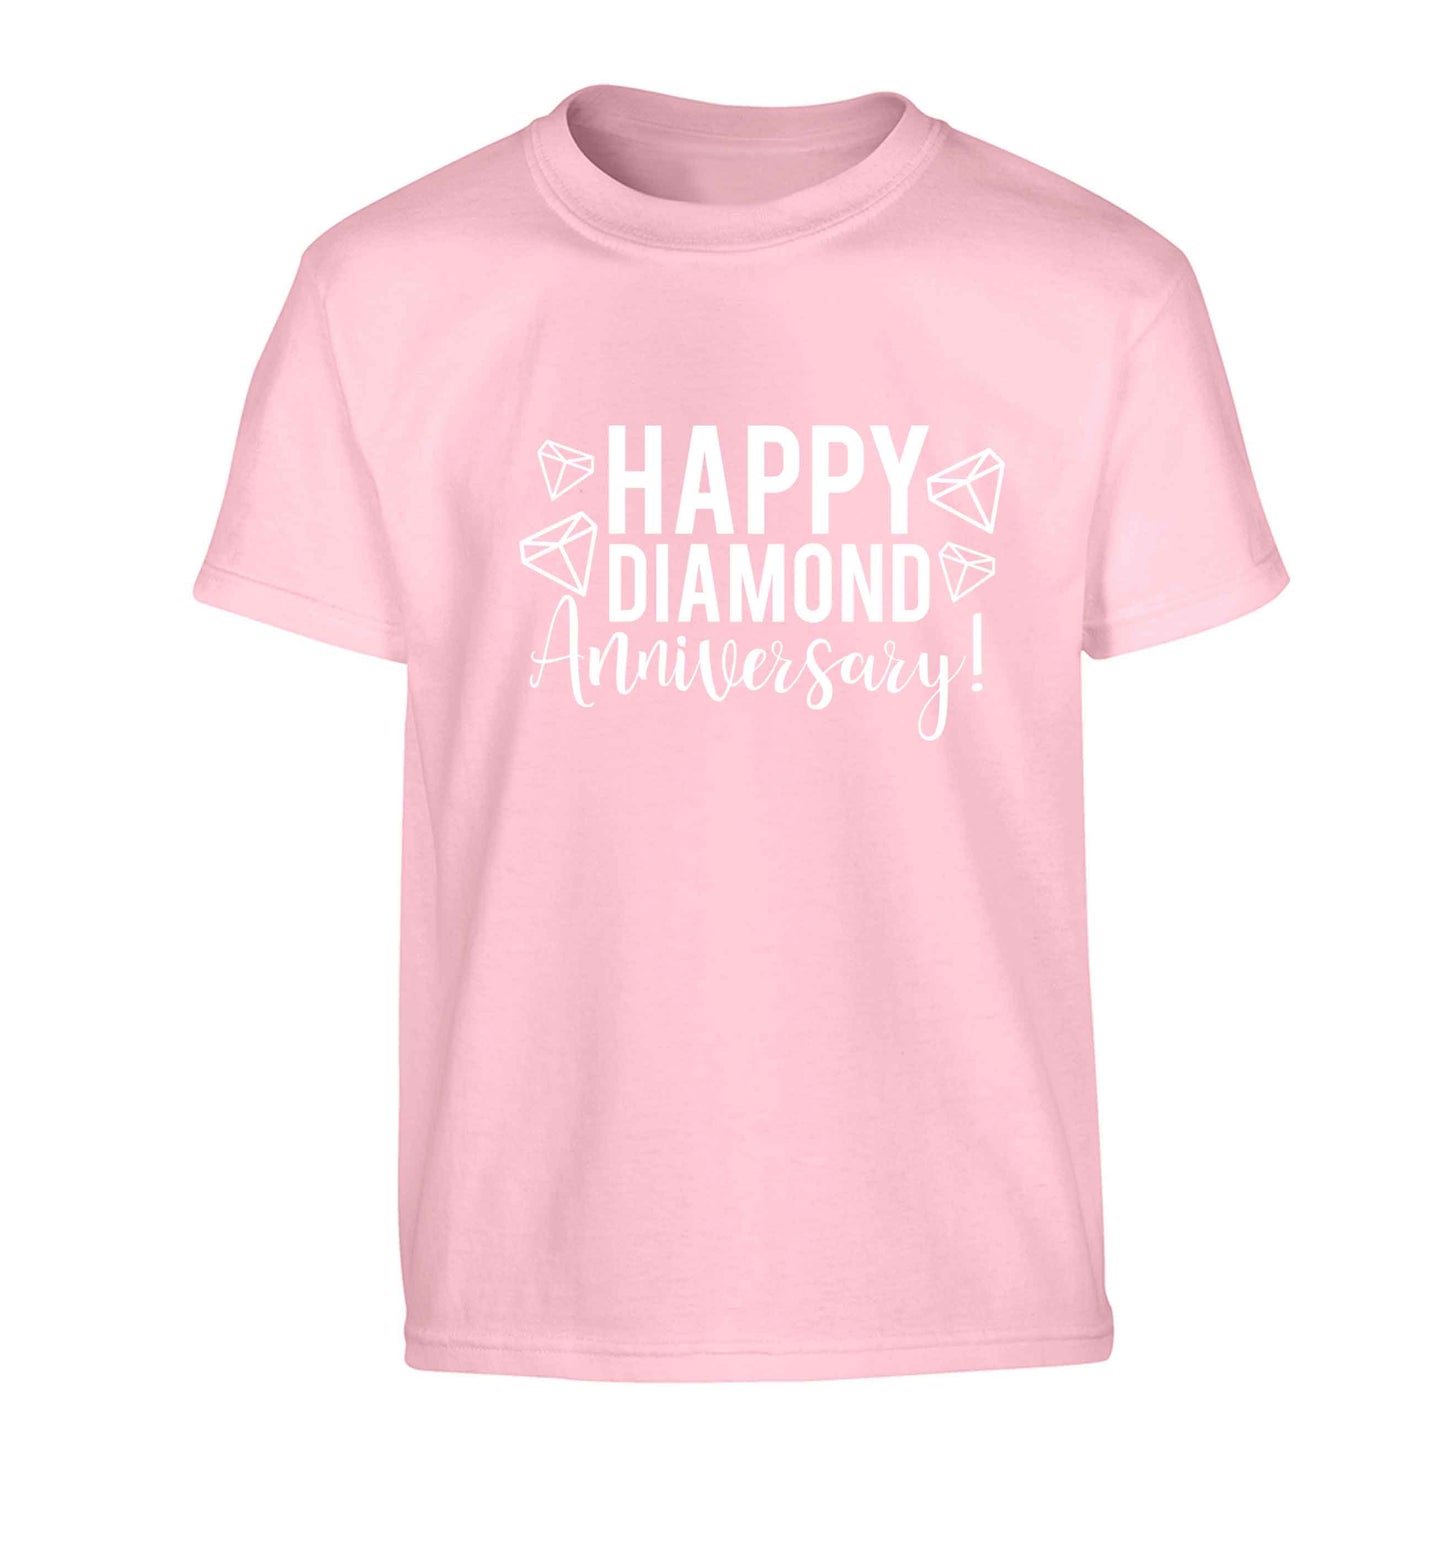 Happy diamond anniversary! Children's light pink Tshirt 12-13 Years